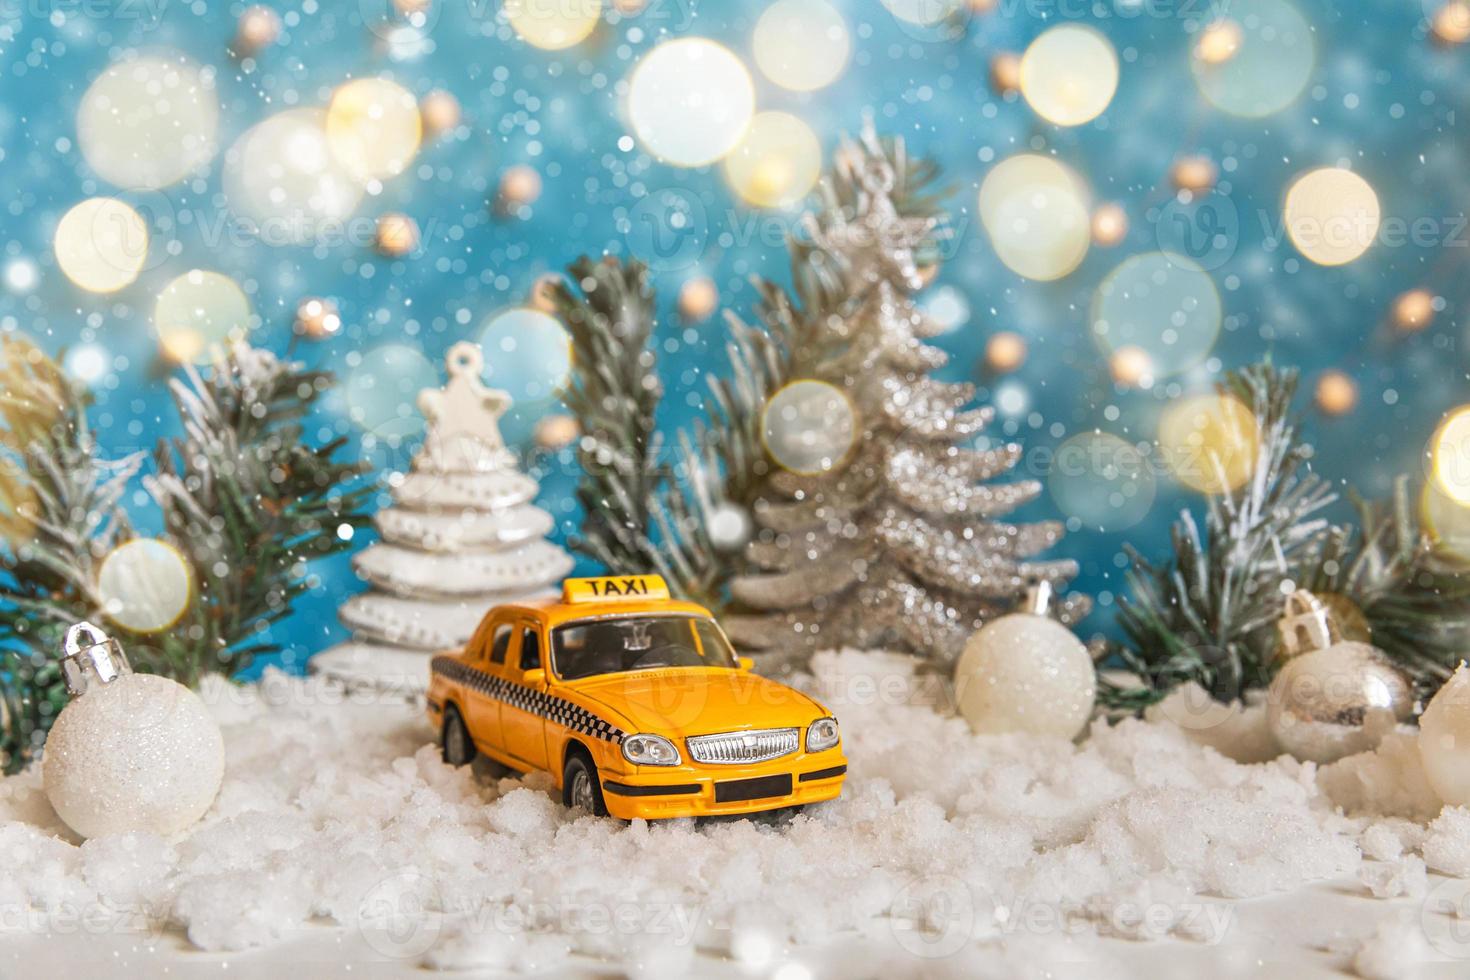 fond de bannière de Noël. modèle de taxi de voiture de jouet jaune et ornements de décorations d'hiver sur fond bleu avec de la neige et des lumières de guirlande défocalisées. concept de service de taxi de livraison de trafic urbain. photo